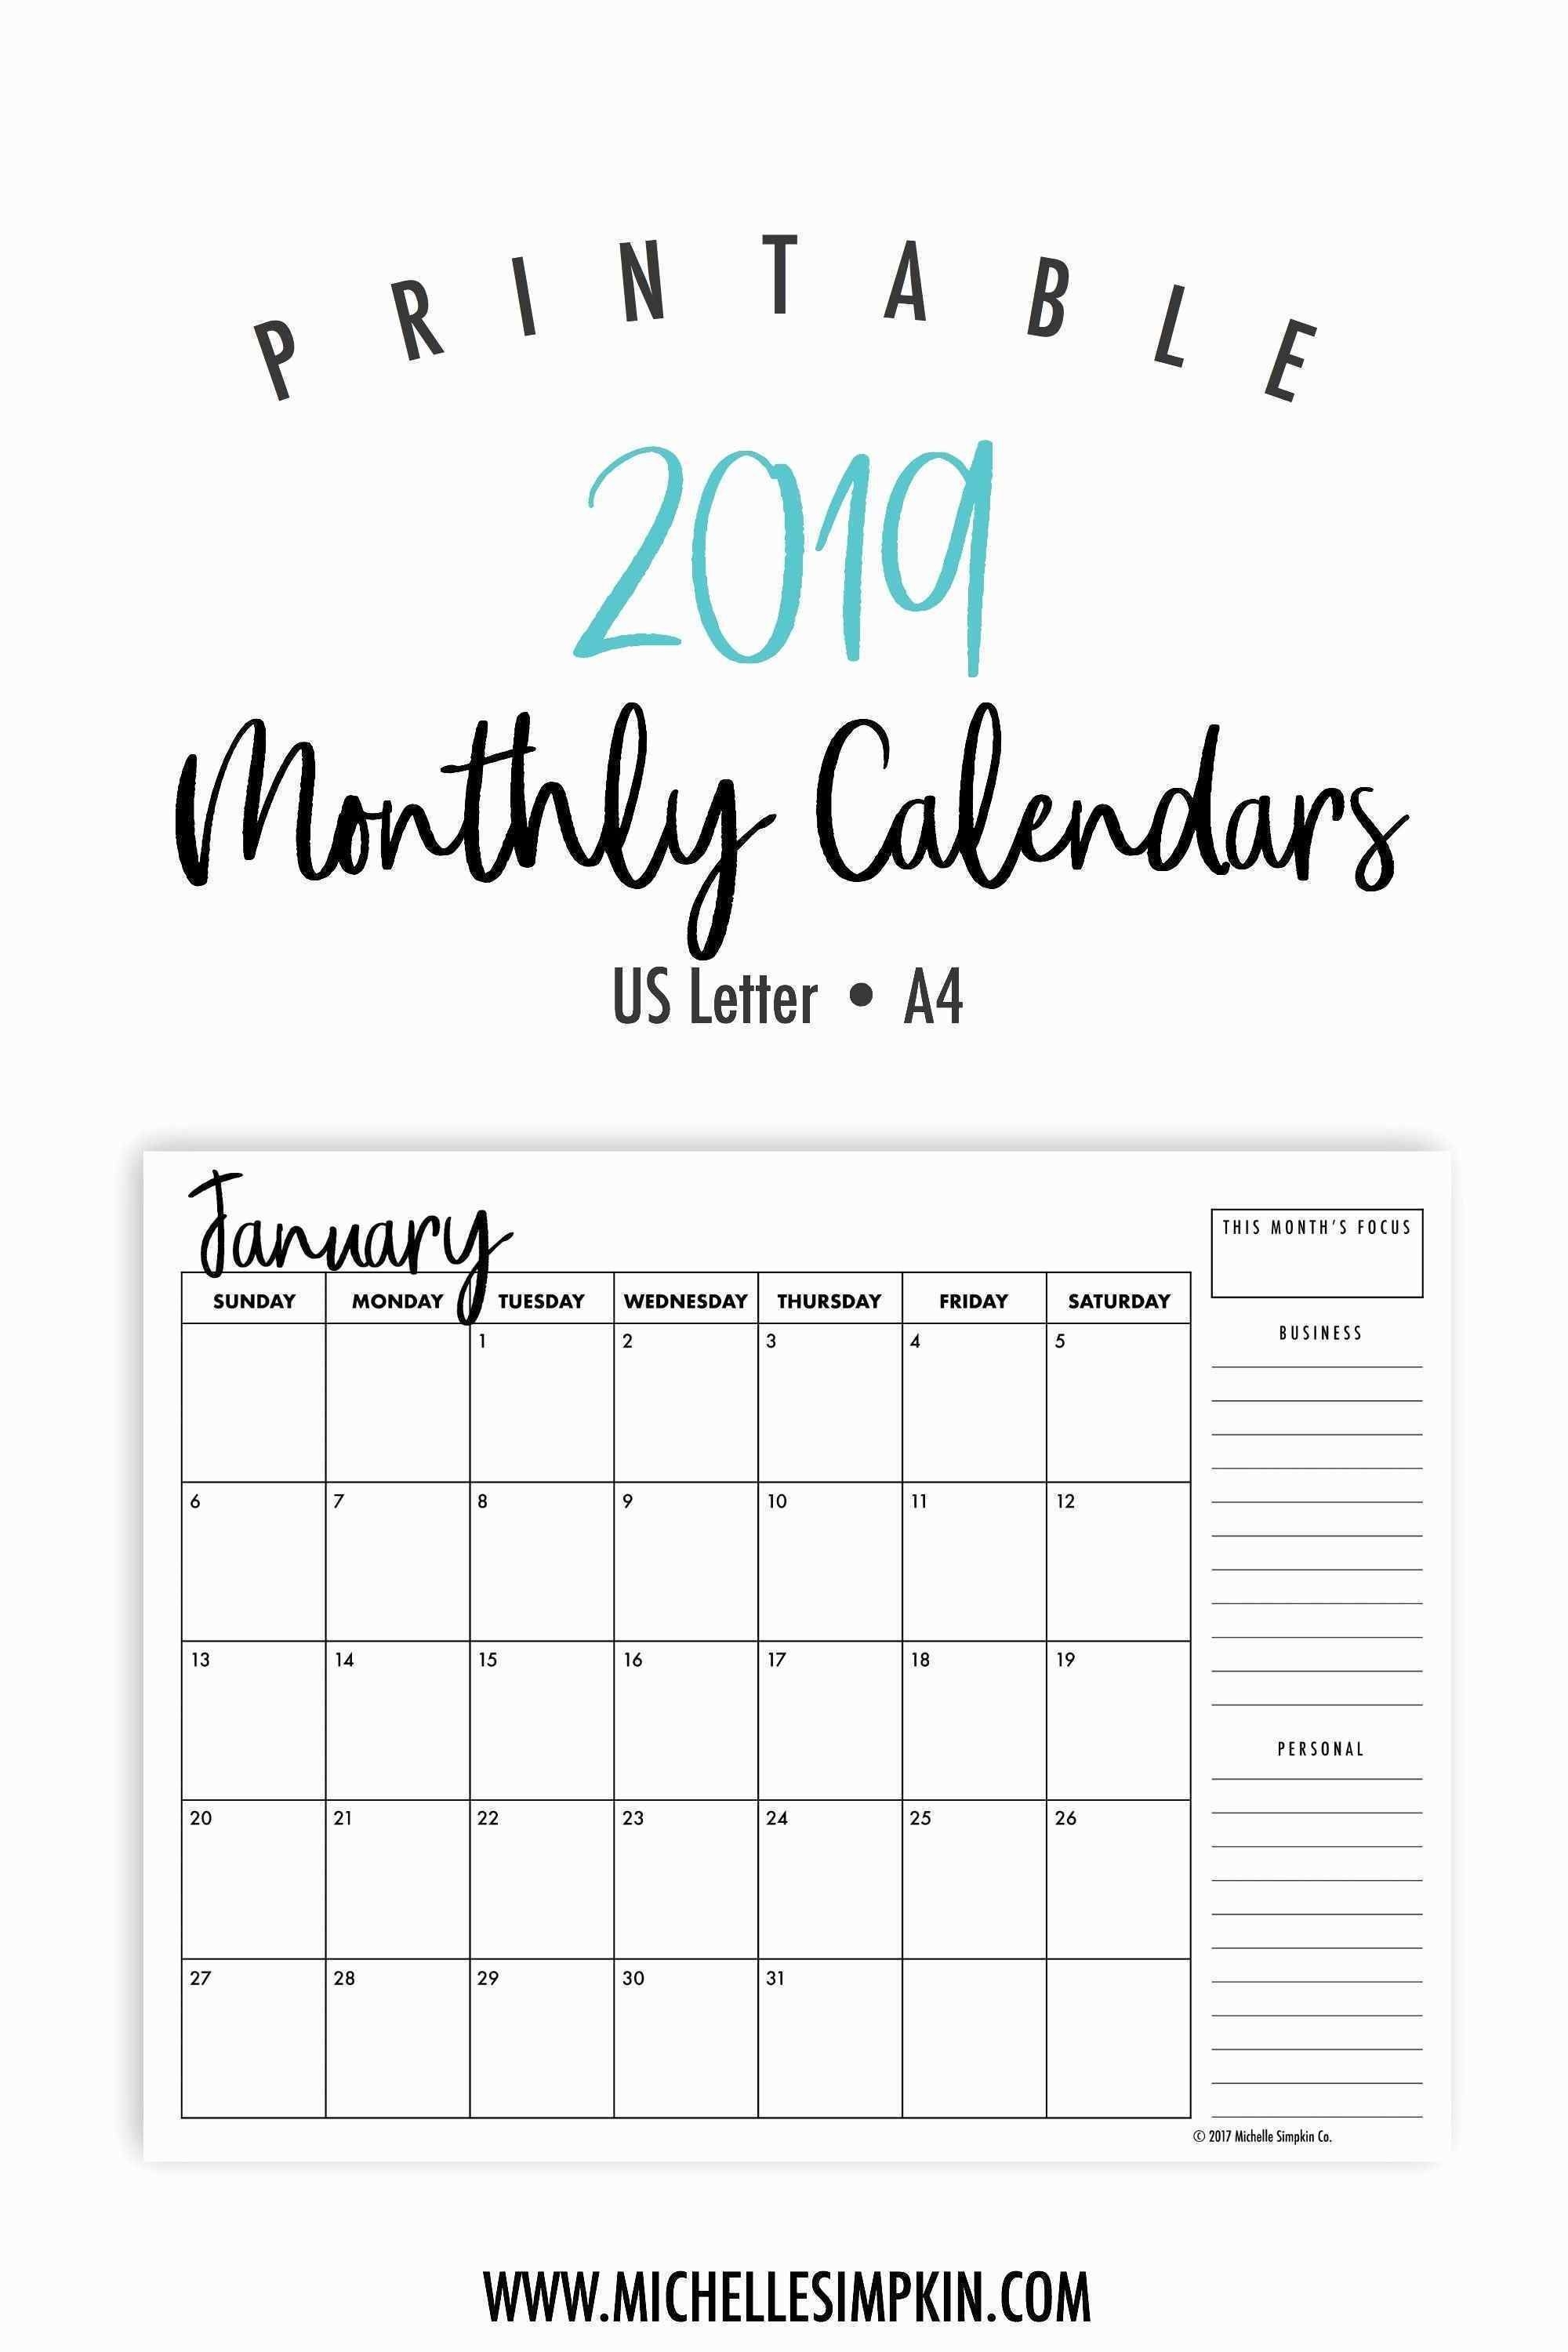 Monthly Budget Calendar Template Best Of 2019 Calendar 2019